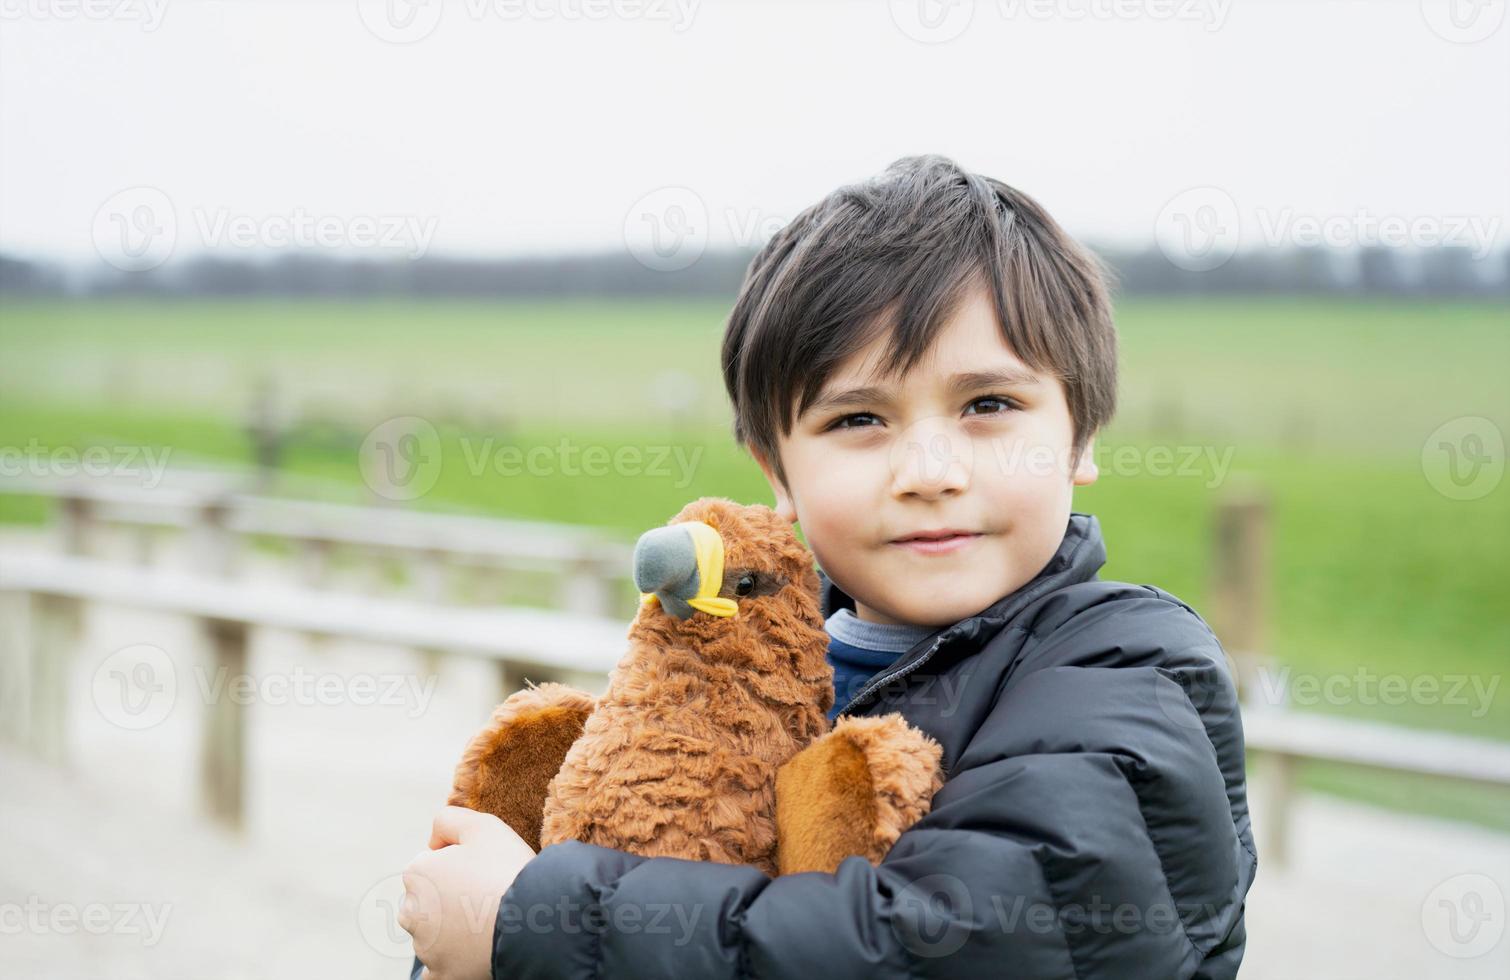 heureux jeune garçon jouant avec un jouet d'oiseau dans le parc le matin ensoleillé, enfant debout dans les champs de printemps, enfant positif avec un visage souriant se relaxant ou s'amusant en plein air en été photo